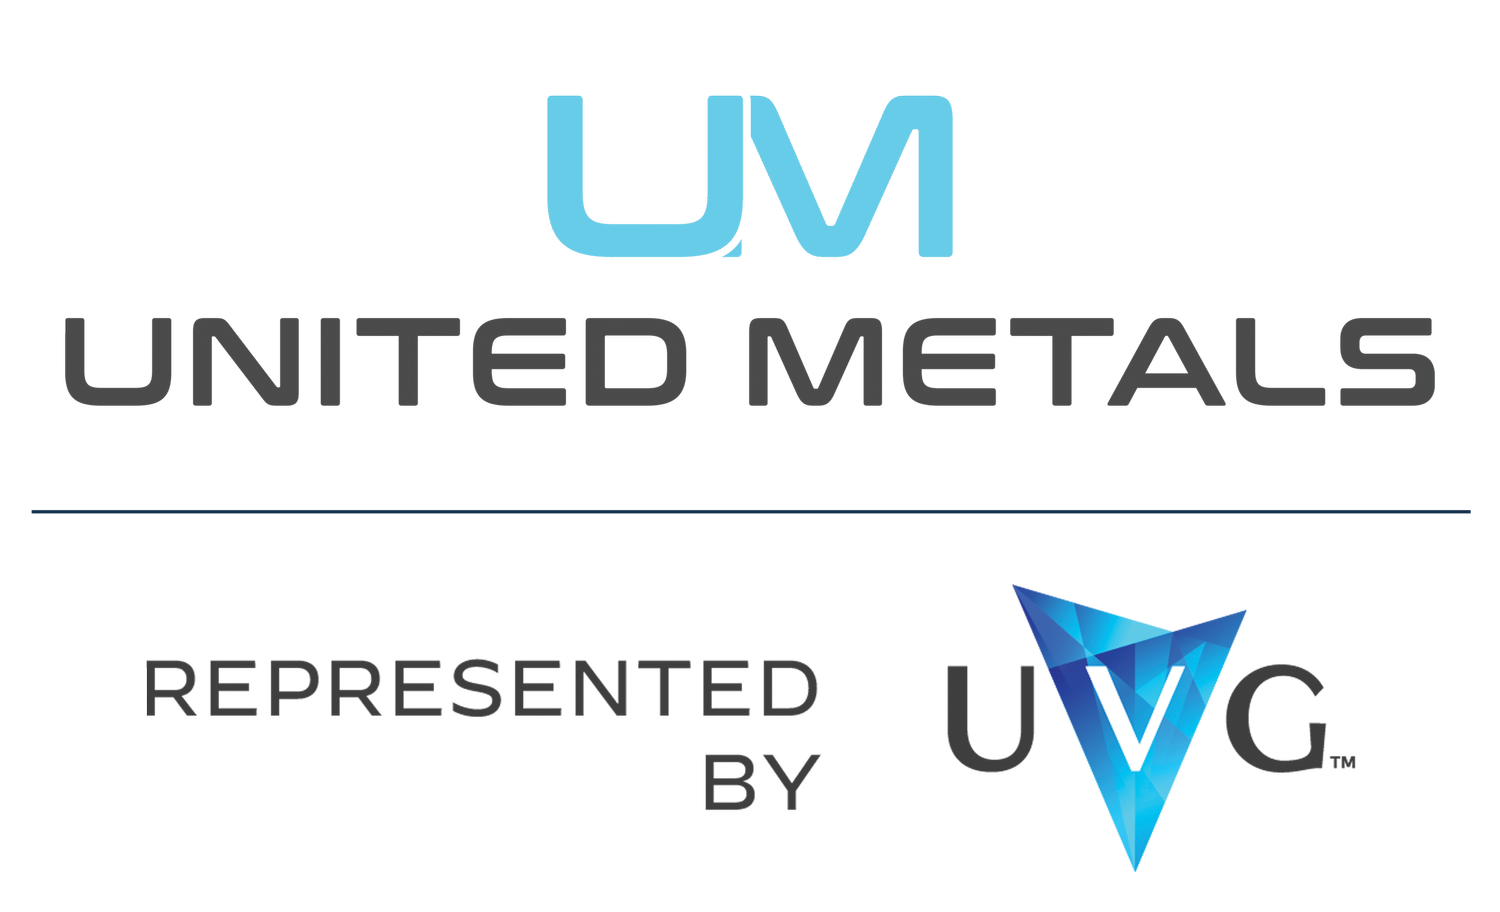 United Metals